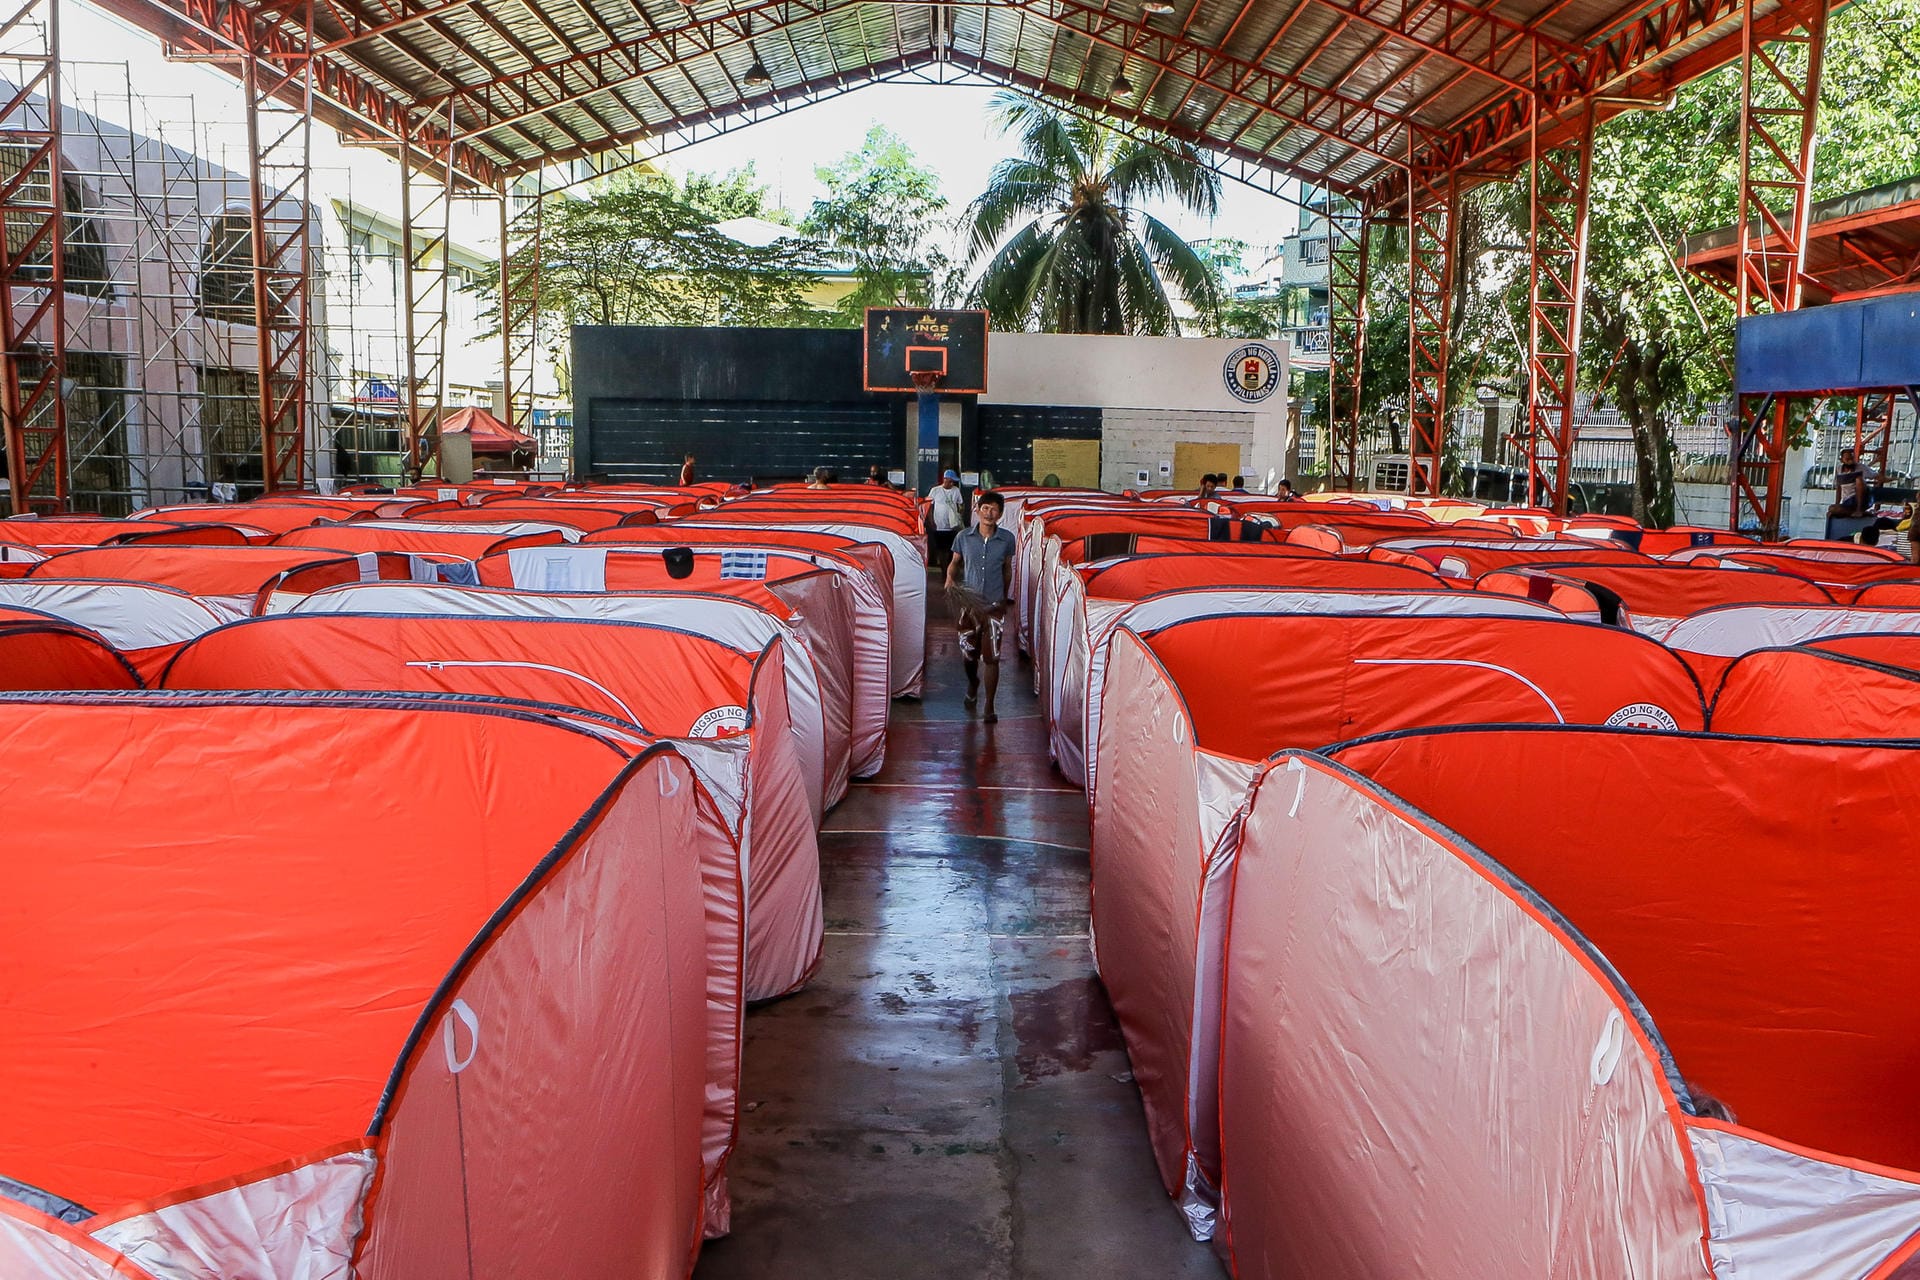 Philippinen, Manila: Ein Mann geht zwischen modularen Zelten, welche für Straßenbewohner auf einem Basketballplatz aufgestellt wurden, um die weitere Verbreitung von Covid-19 zu verhindern.